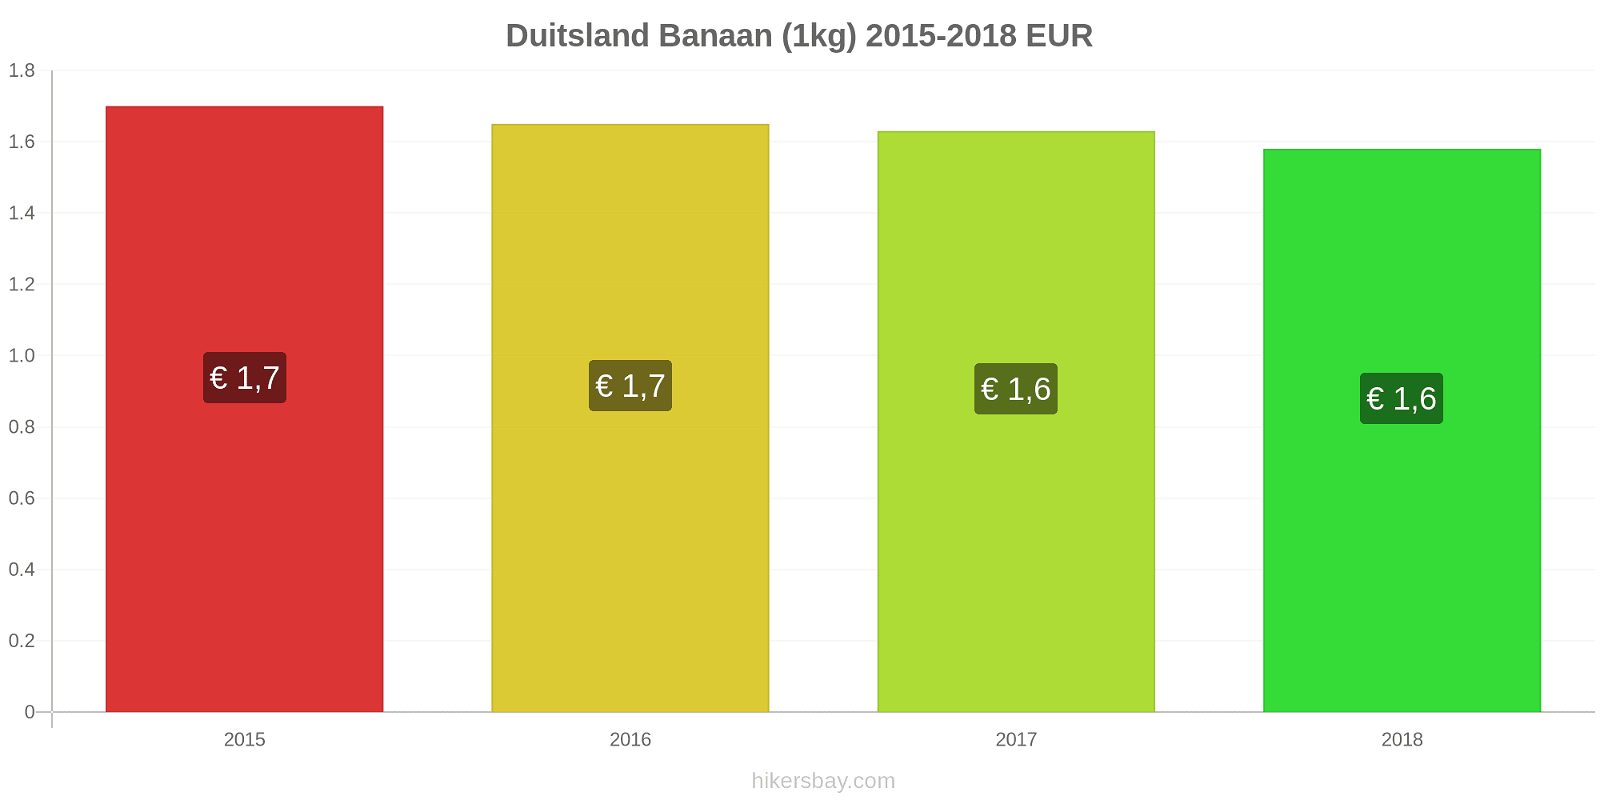 Duitsland prijswijzigingen Bananen (1kg) hikersbay.com